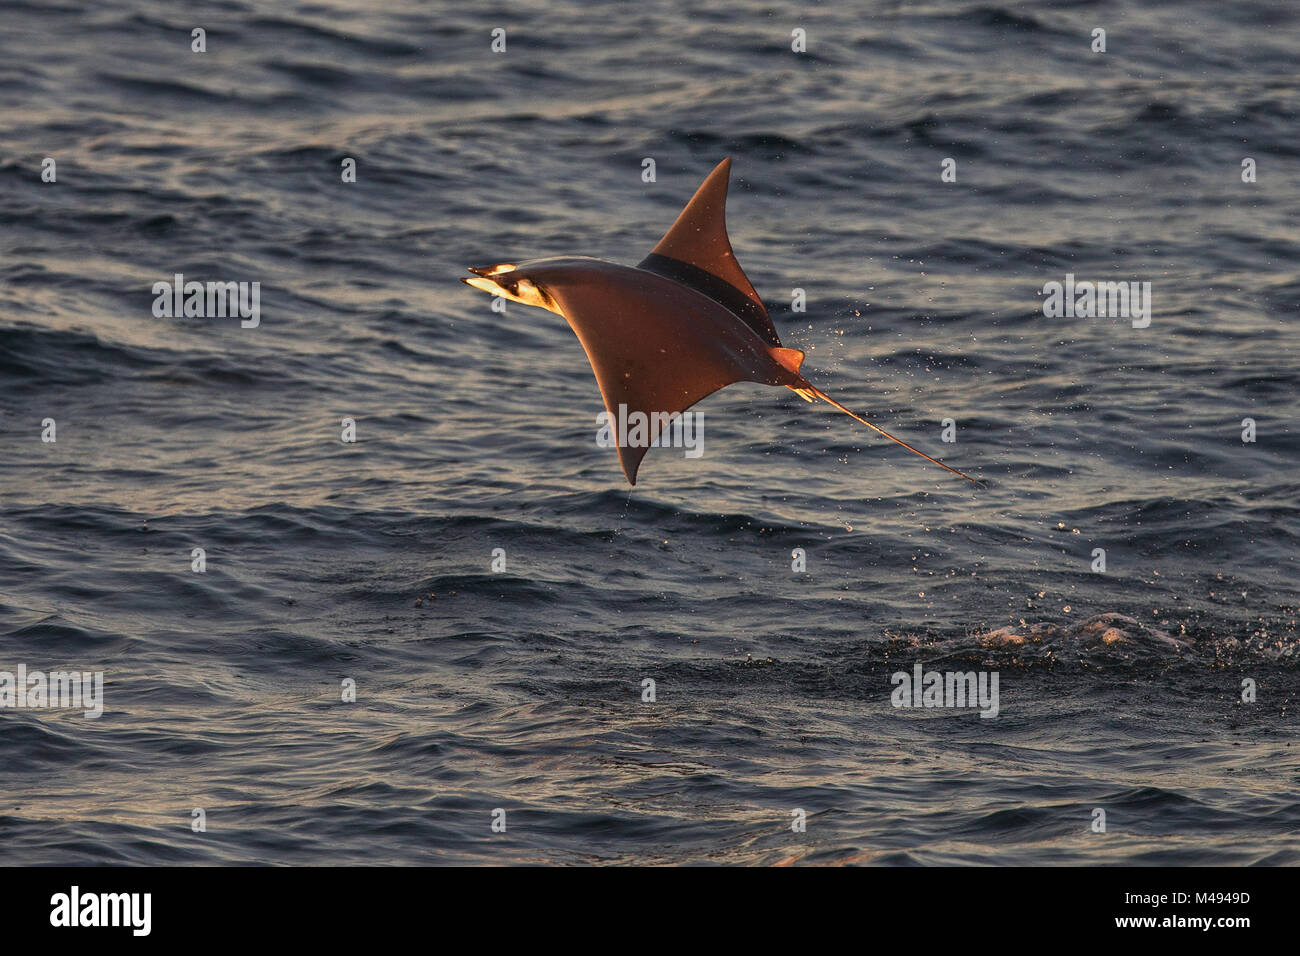 Die Munk mobula Ray/Devilray (Mobula munkiana) springen aus dem Wasser, Meer von Cortez, Golf von Kalifornien, Baja California, Mexiko, im Februar Stockfoto